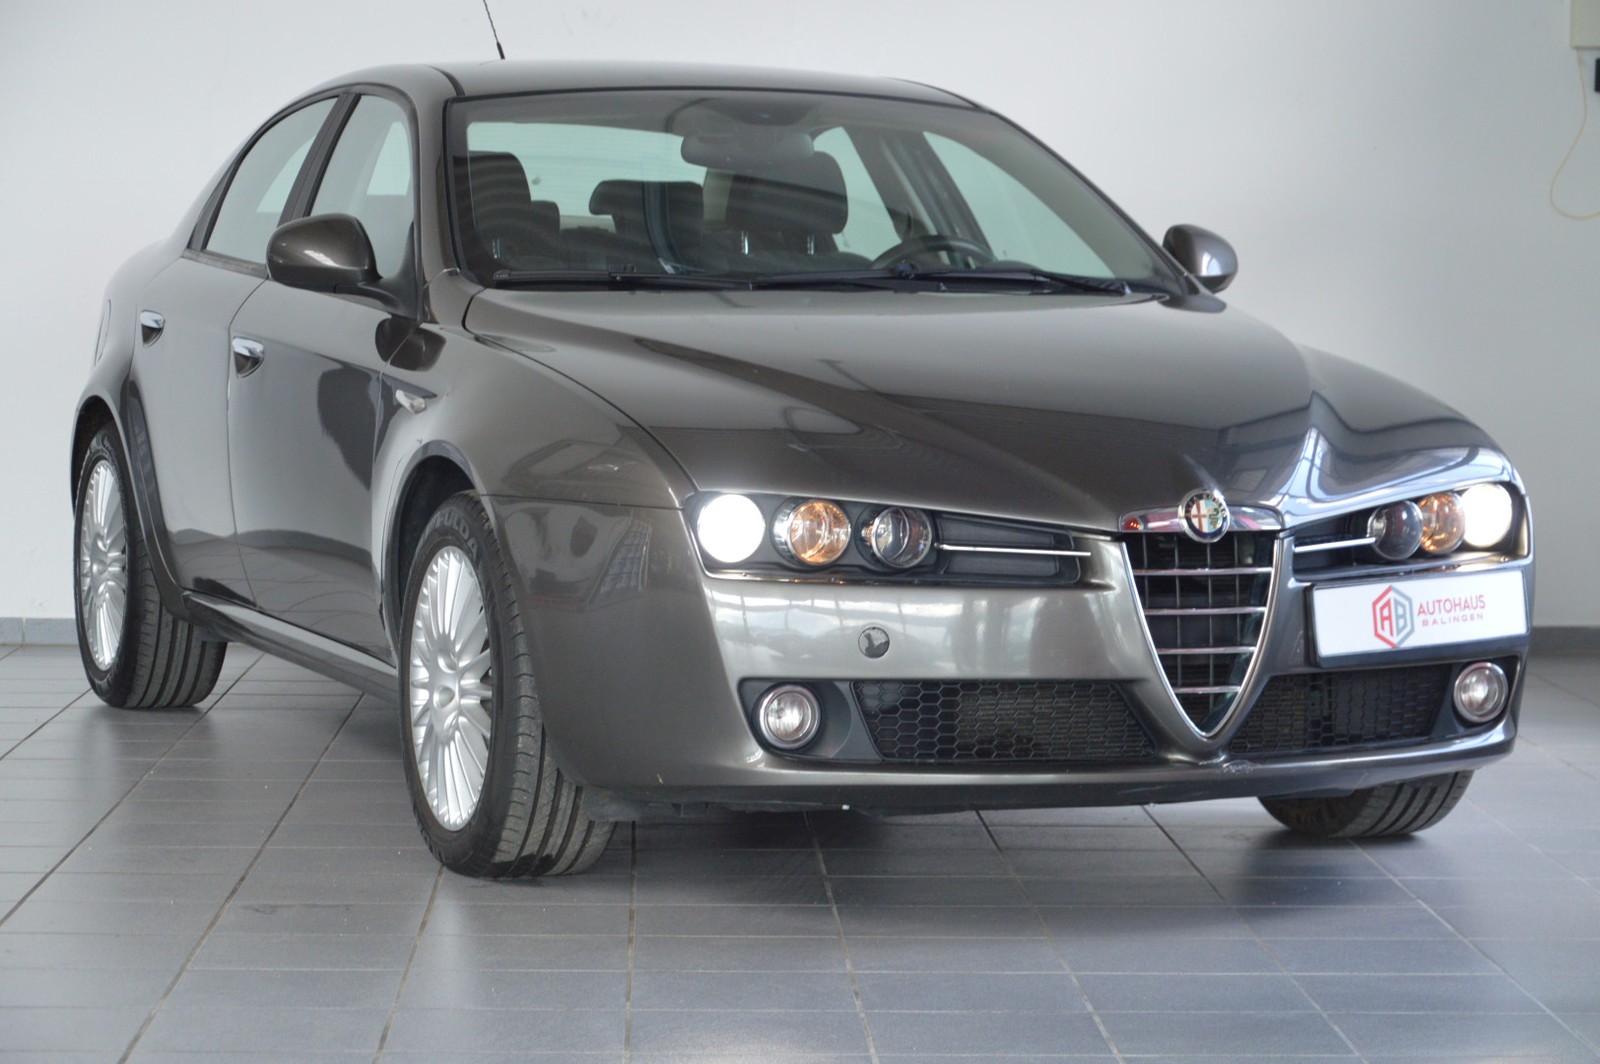 Alfa Romeo 159 1.9 JTDM 16V Distinctive gebraucht kaufen in Balingen Preis  2499 eur - Int.Nr.: 1671 VERKAUFT